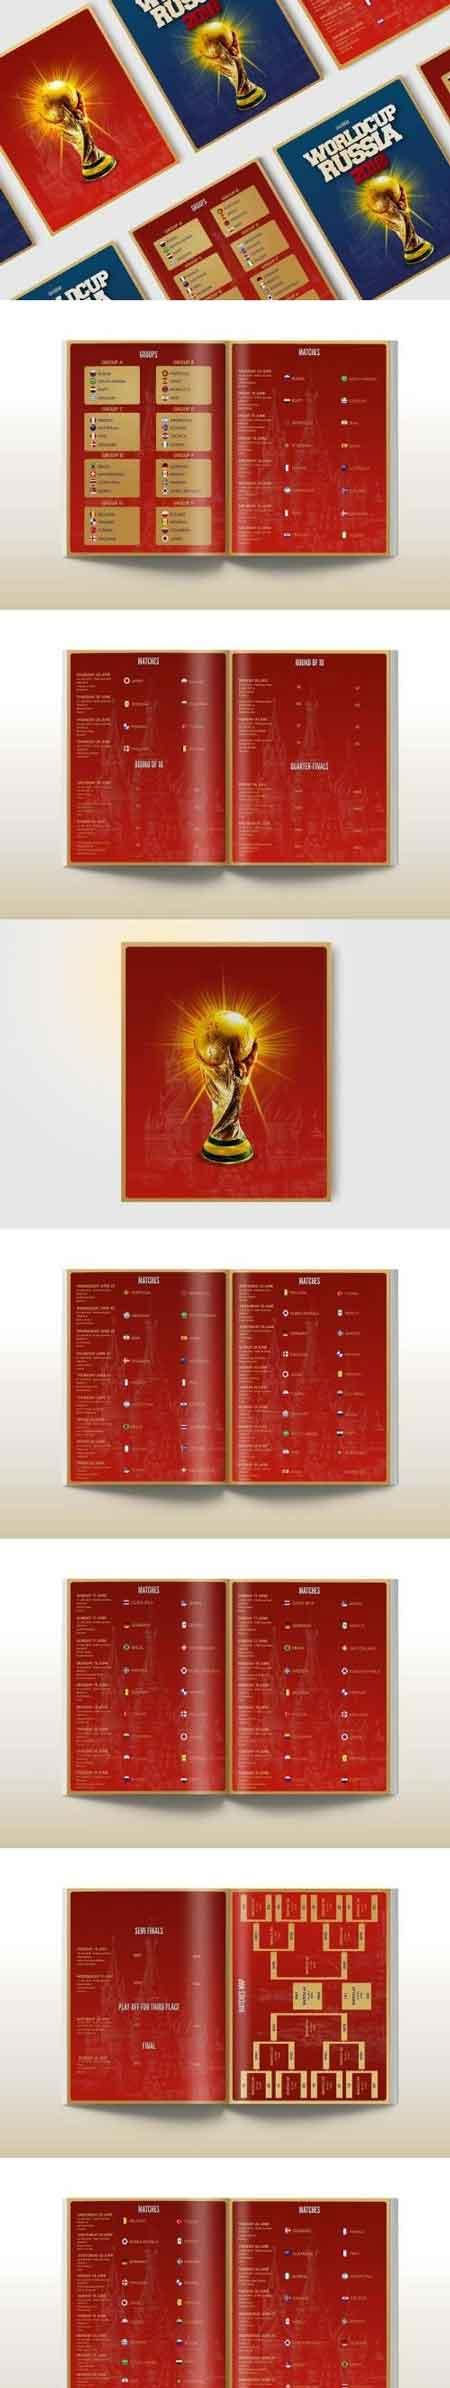 2018世界杯足球比赛赛程日历画册手册模板下载[PSD]